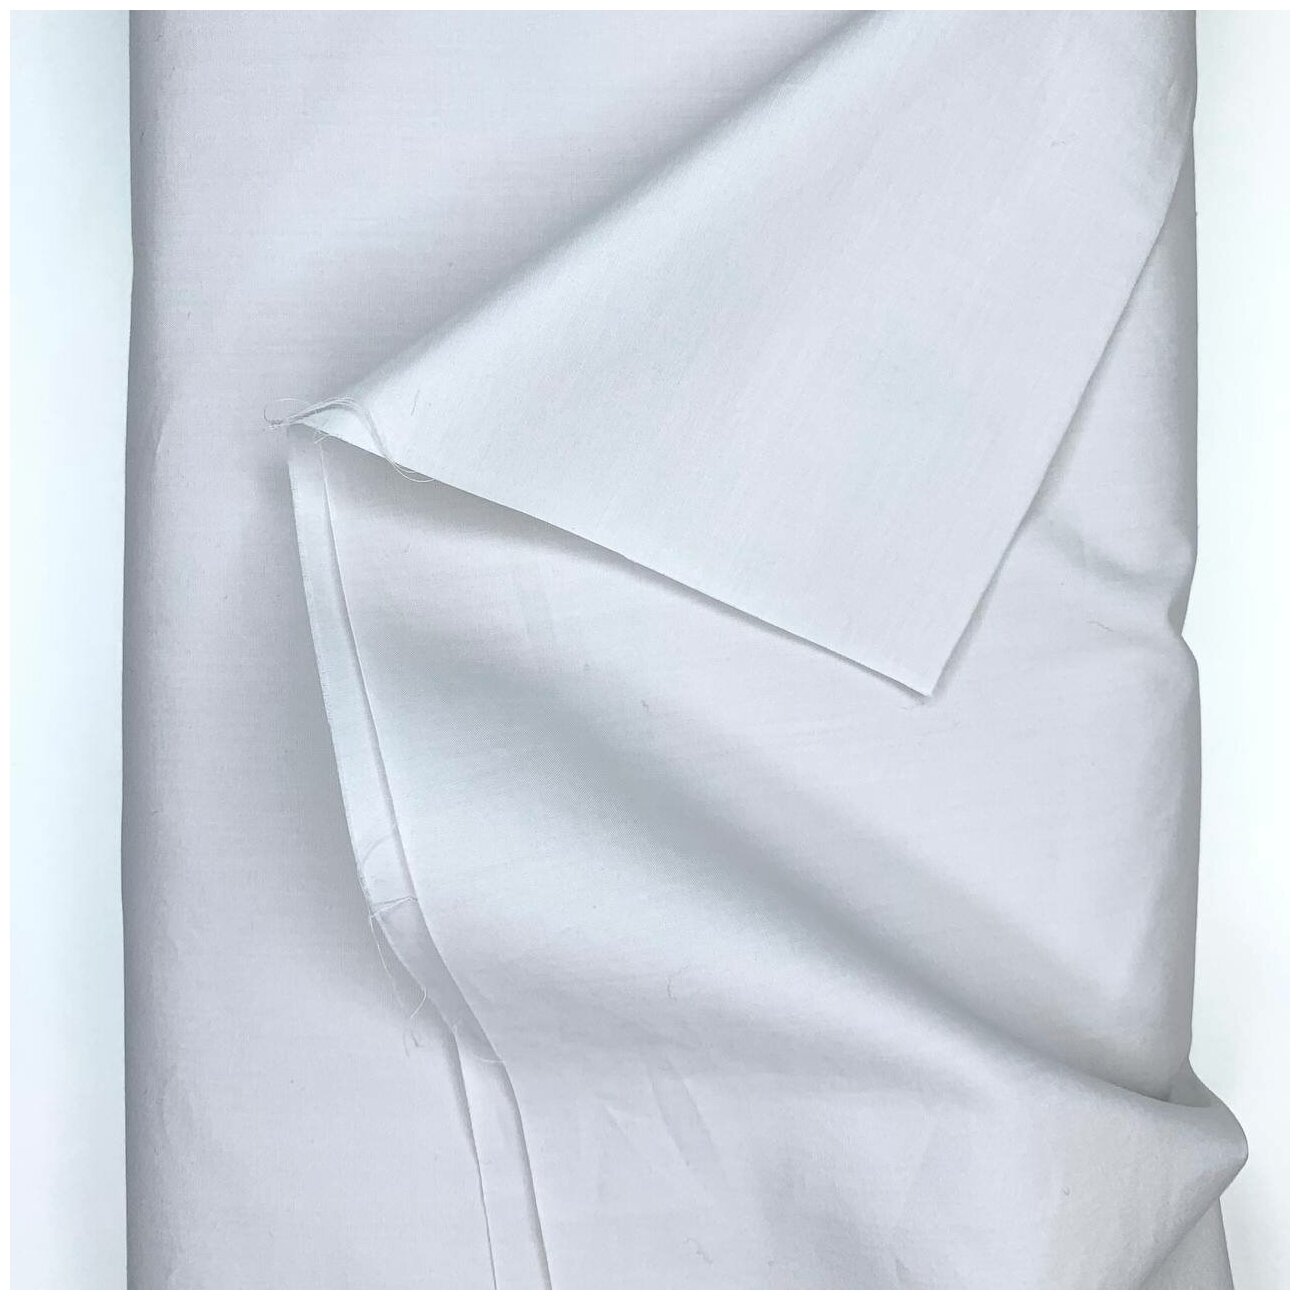 Ткань сорочечная bibliotex. Серо-белого цвета. Хлопок/эластан. Италия. 0,5 м (ширина 140 см)